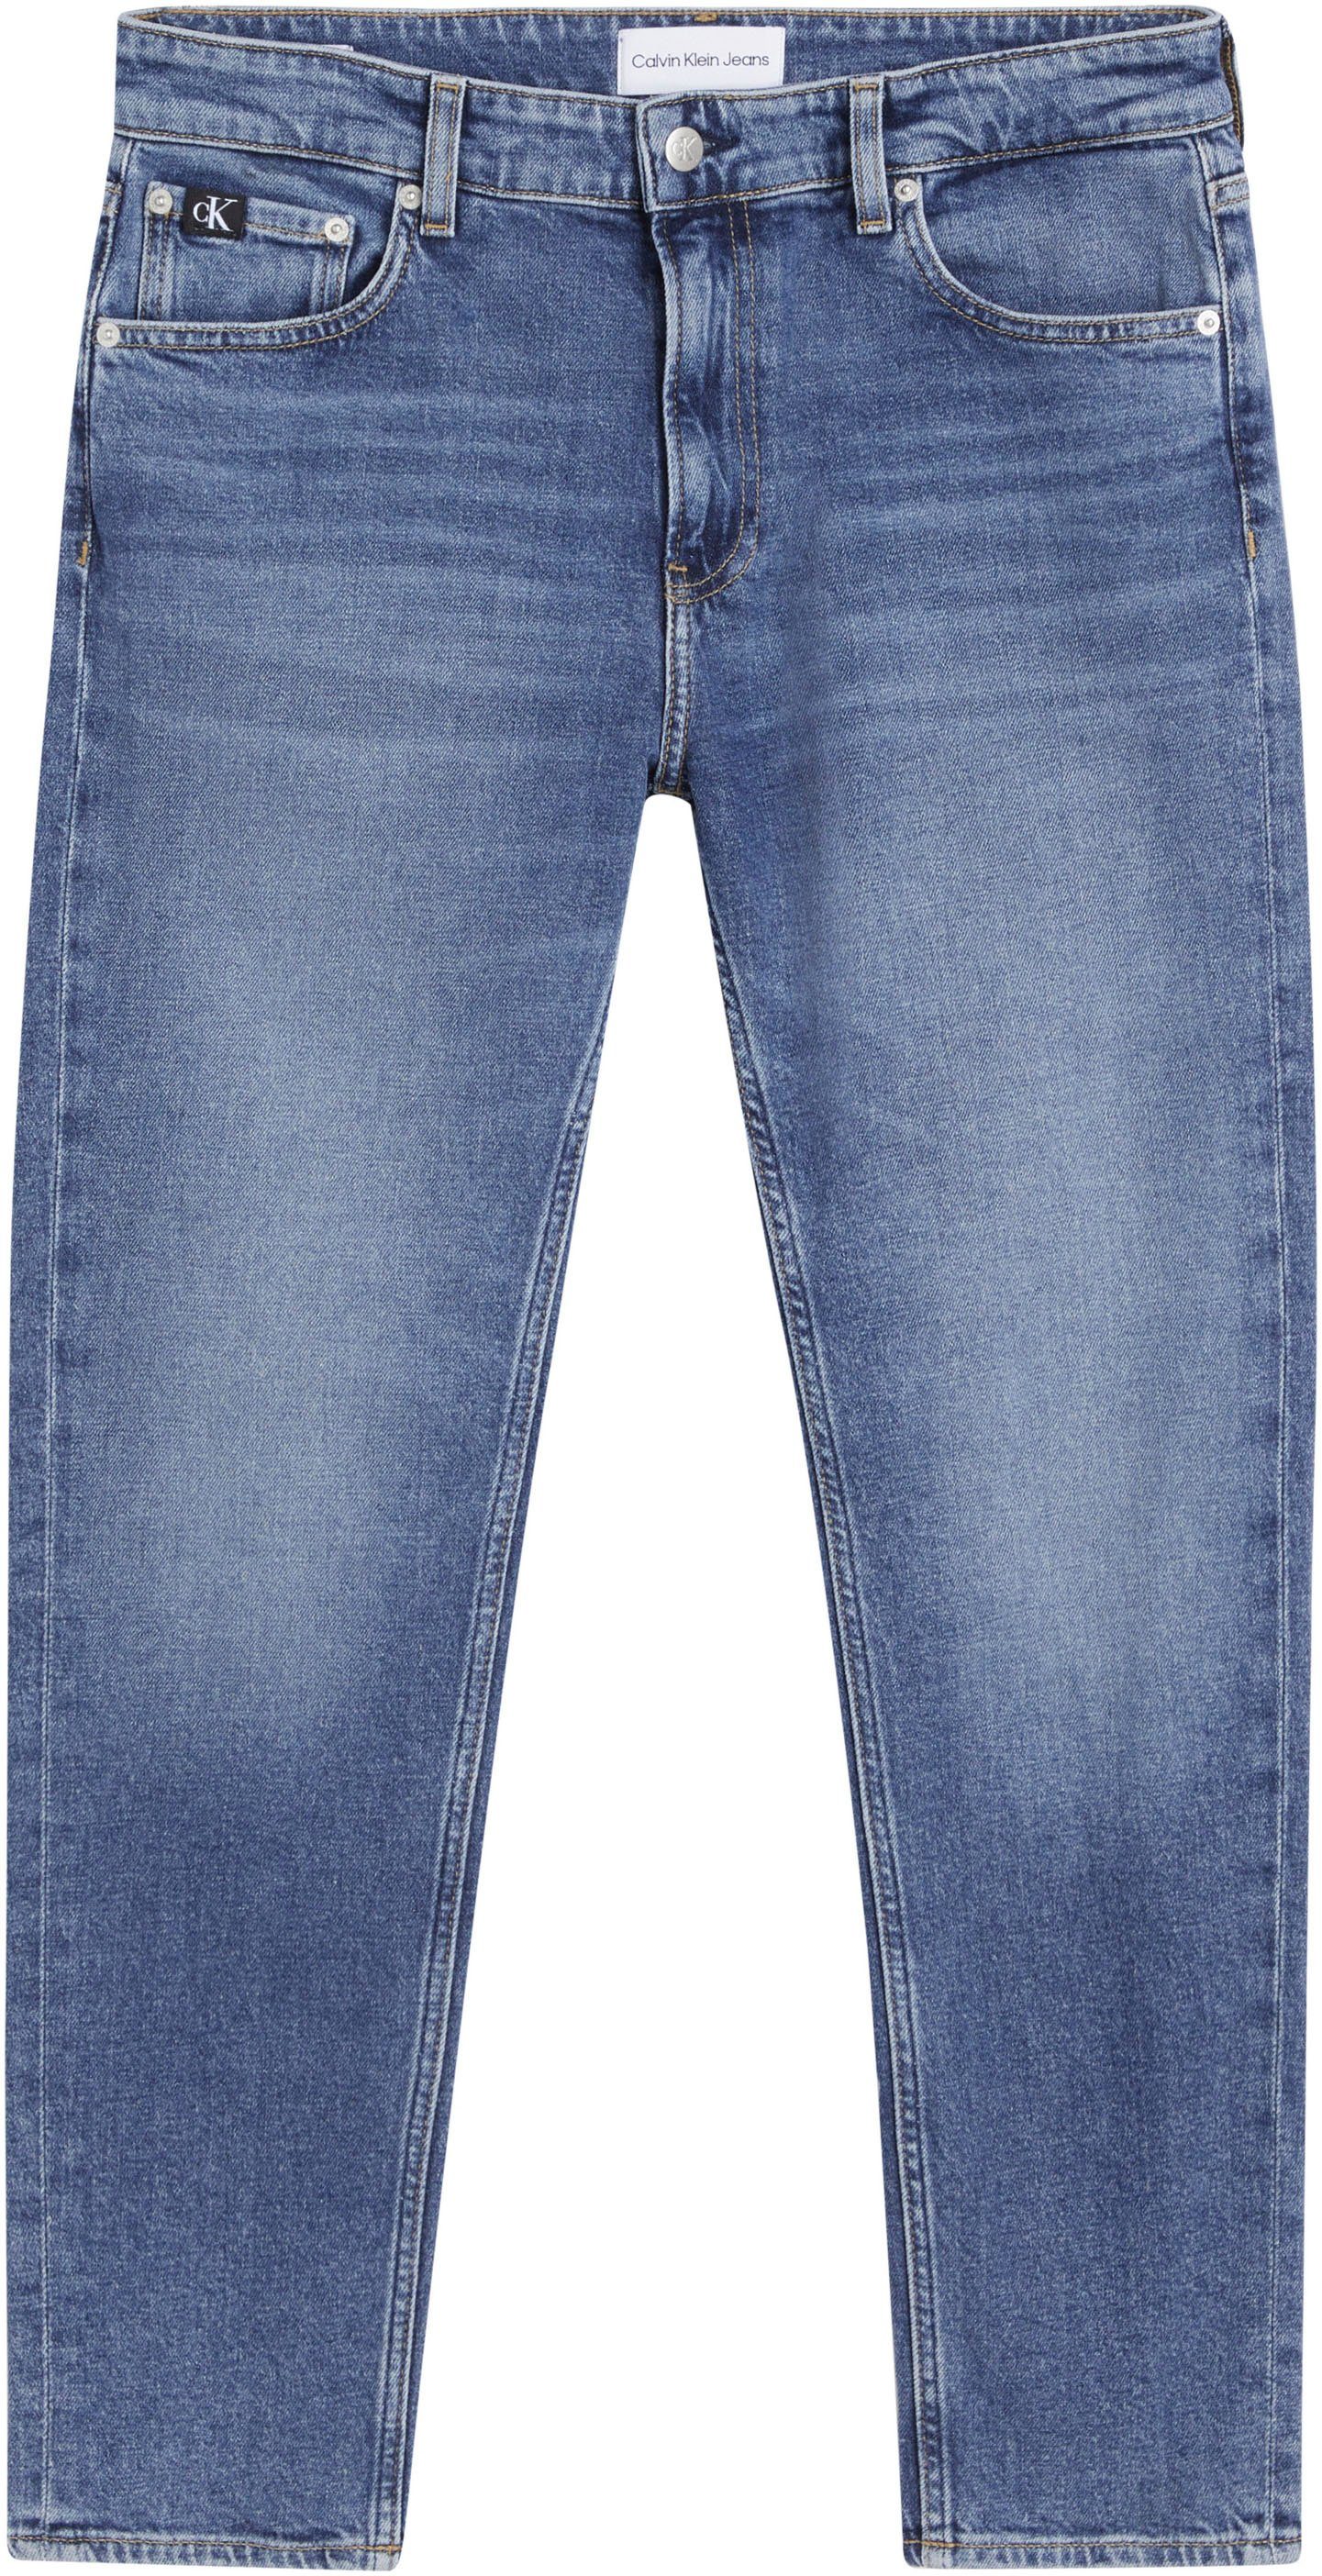 JEAN im DAD Denim_Dark Dad-Jeans Klein Calvin Jeans 5-Pocket-Style